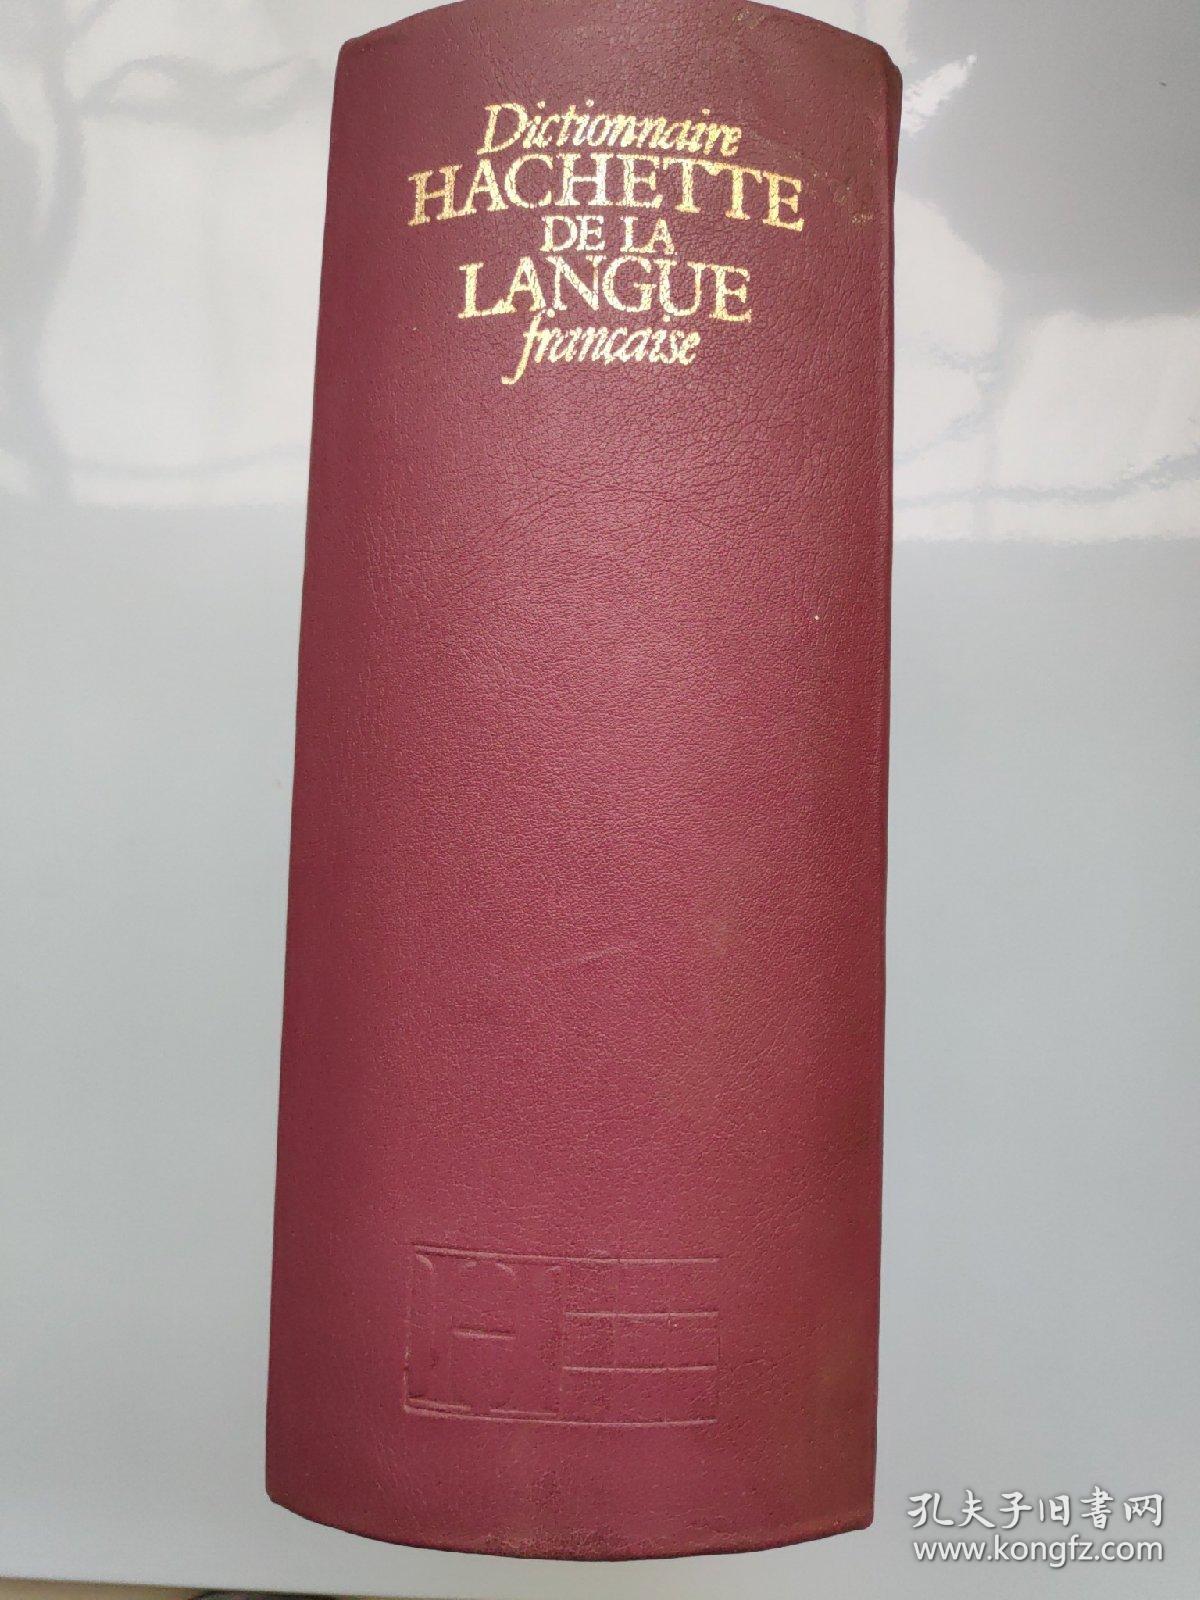 Dictionnaire HACHETTE DE LA LANGUE francaise  （ 内部交流  法语词典）